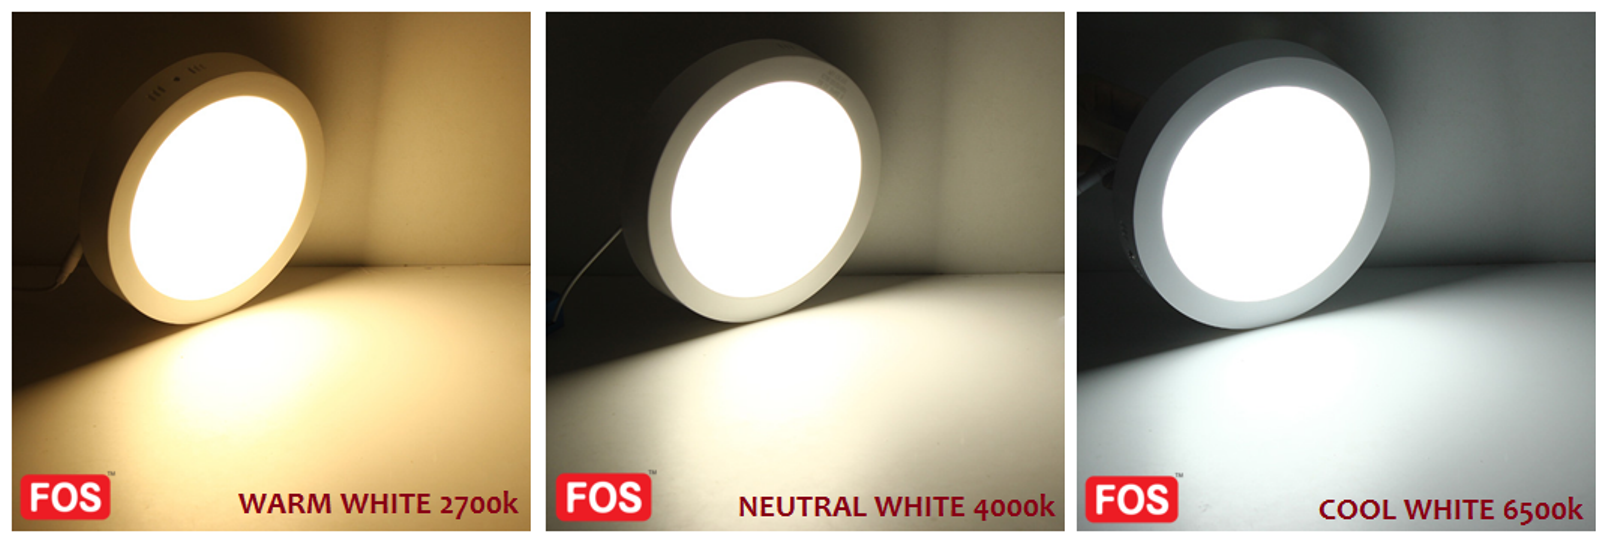 FOS LED Panel Light 24 Watt - 2400 LUMENS (6500k-4000k-2700k)